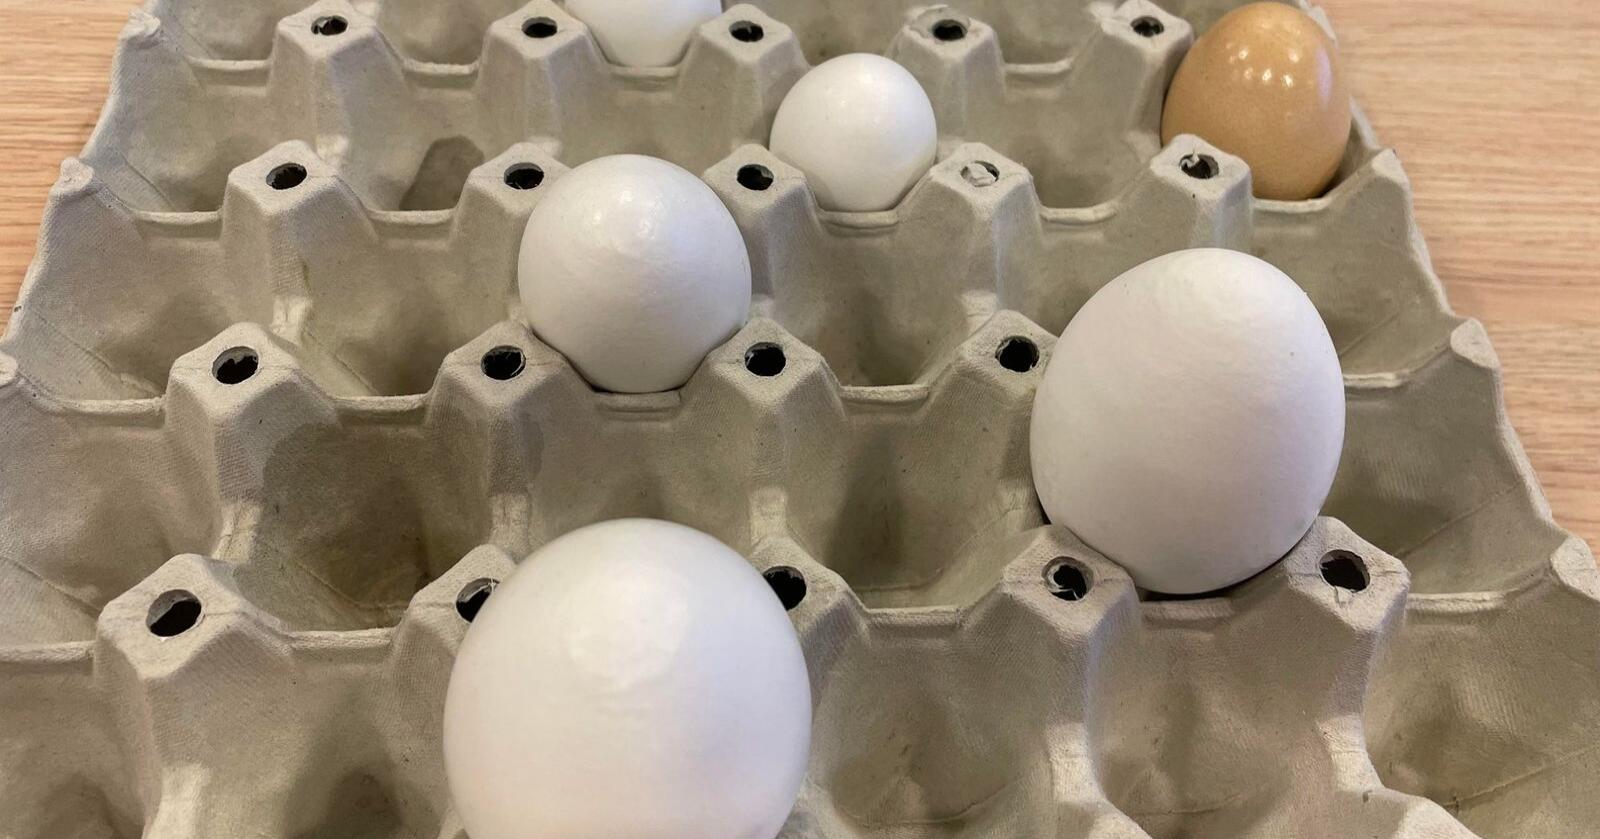 Mangelen på egg har ført til at store dagligvarekjeder setter grenser for hvor mange egg kunden kan kjøpe. Foto: Arkiv